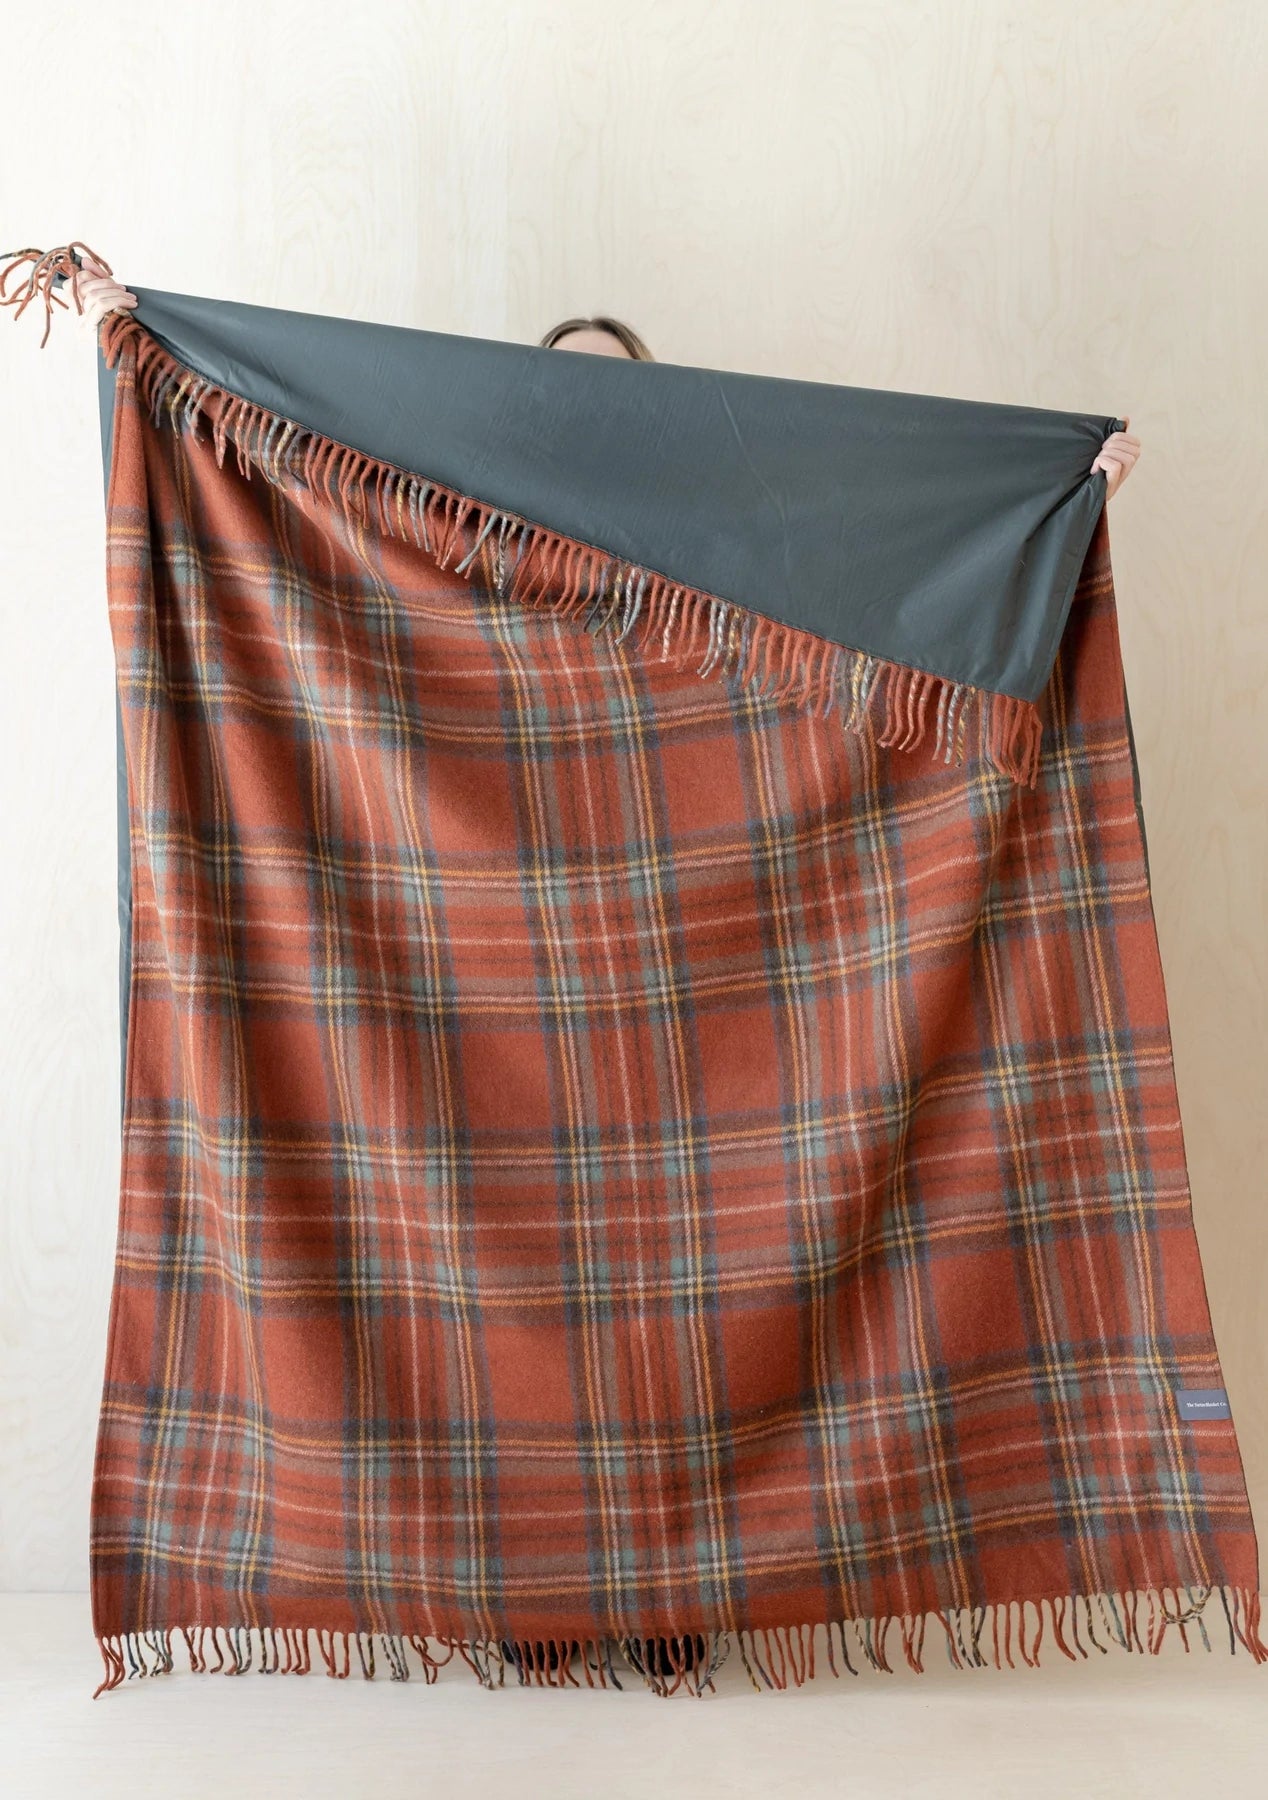 Recycled Wool Waterproof Picnic Blanket in Stewart Royal Antique Tartan